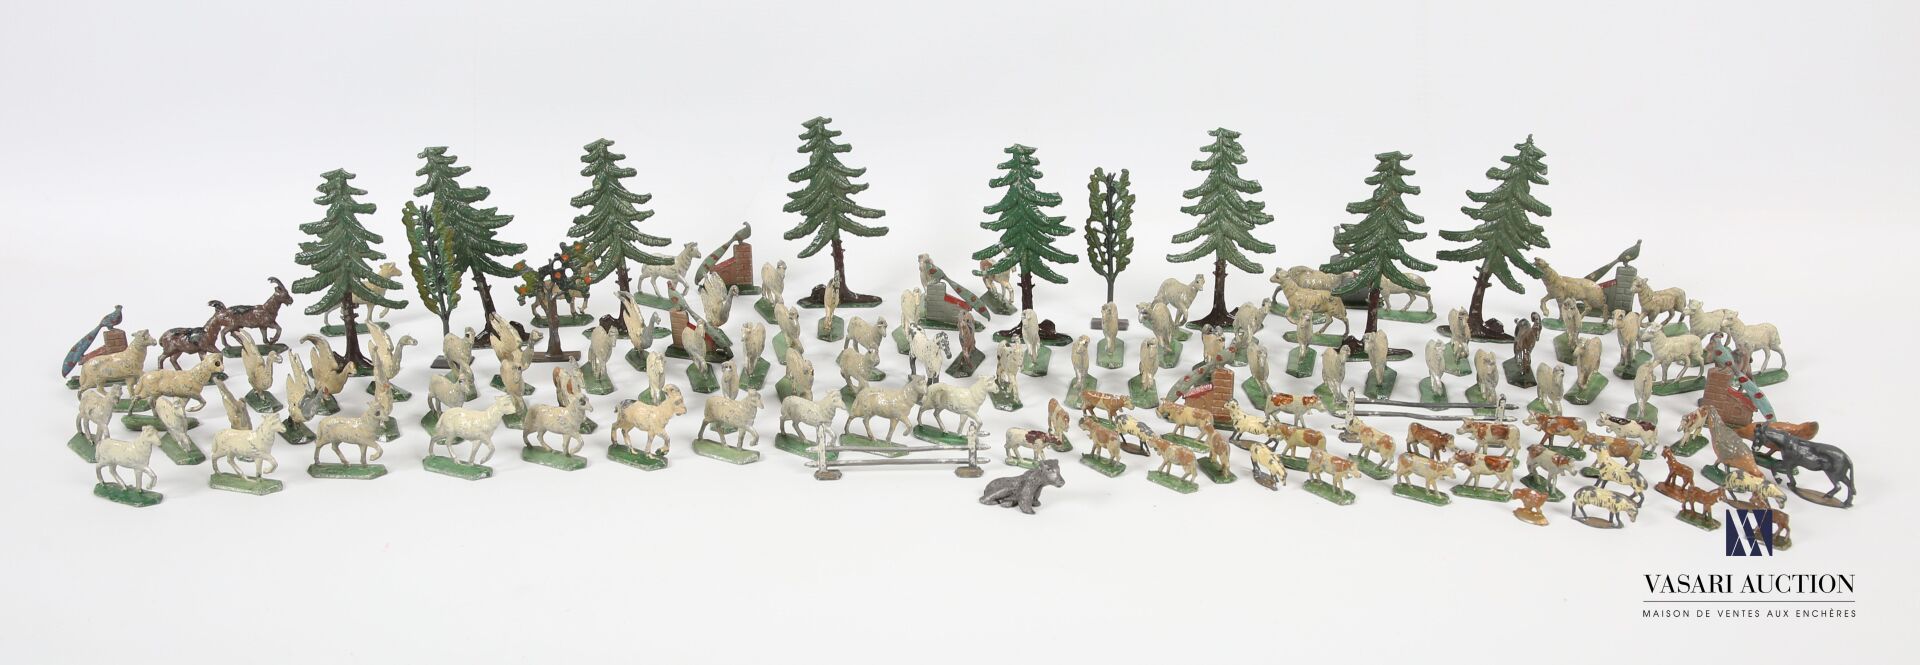 Null 拍品包括十个枞树和叶子的人物--七十只绵羊和山羊--八只孔雀--一头驴子--一只小熊--一只兔子--两只母鸡--十只鹅--两扇门 
包括33个较小的微&hellip;